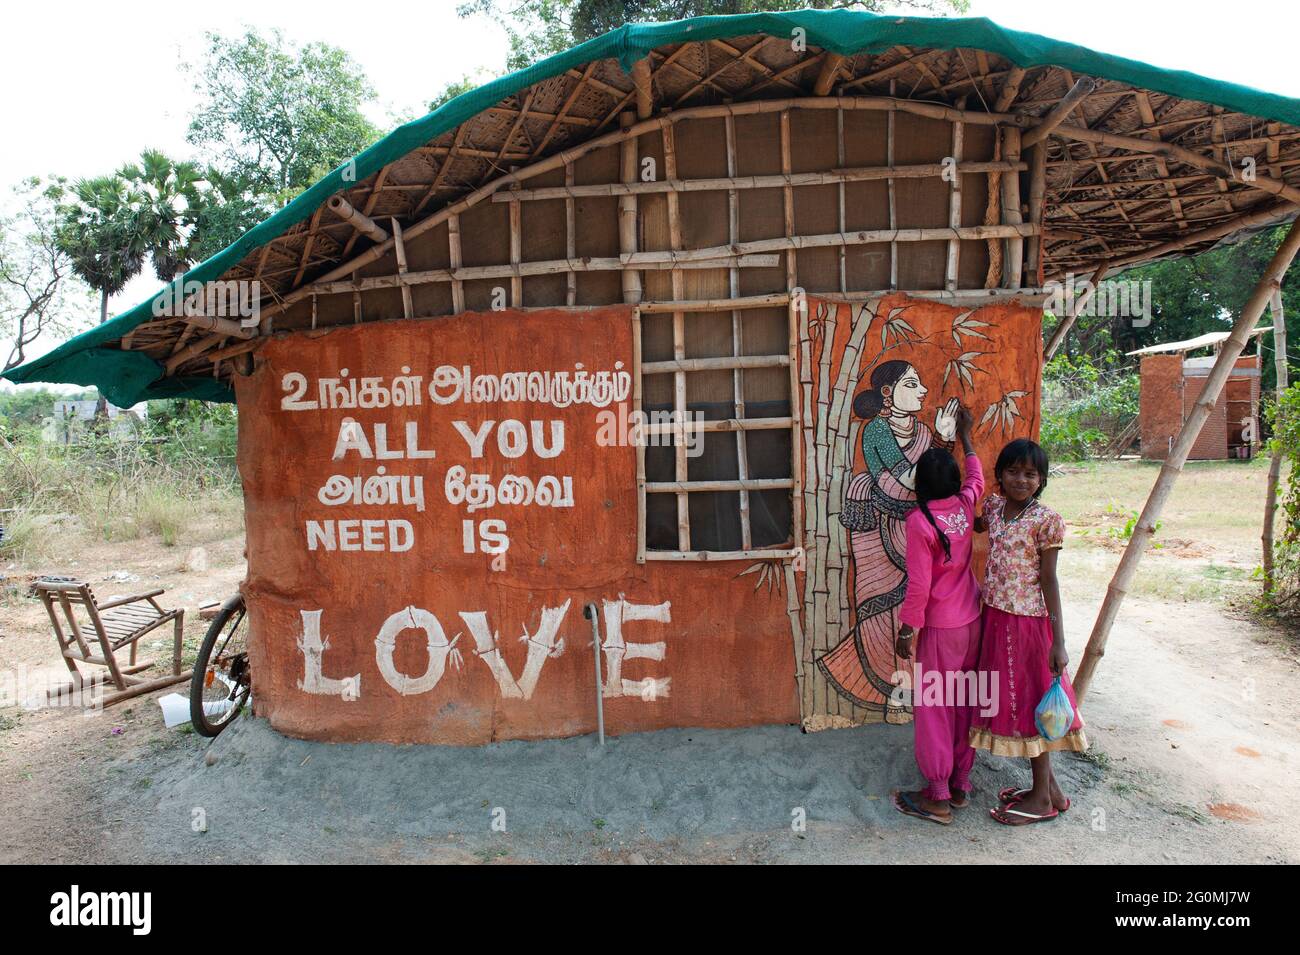 Tamil Nadu, Indien - Februar 2016: 'Alles was du brauchst ist Liebe' geschrieben auf einer Hütte in südindien. Stockfoto